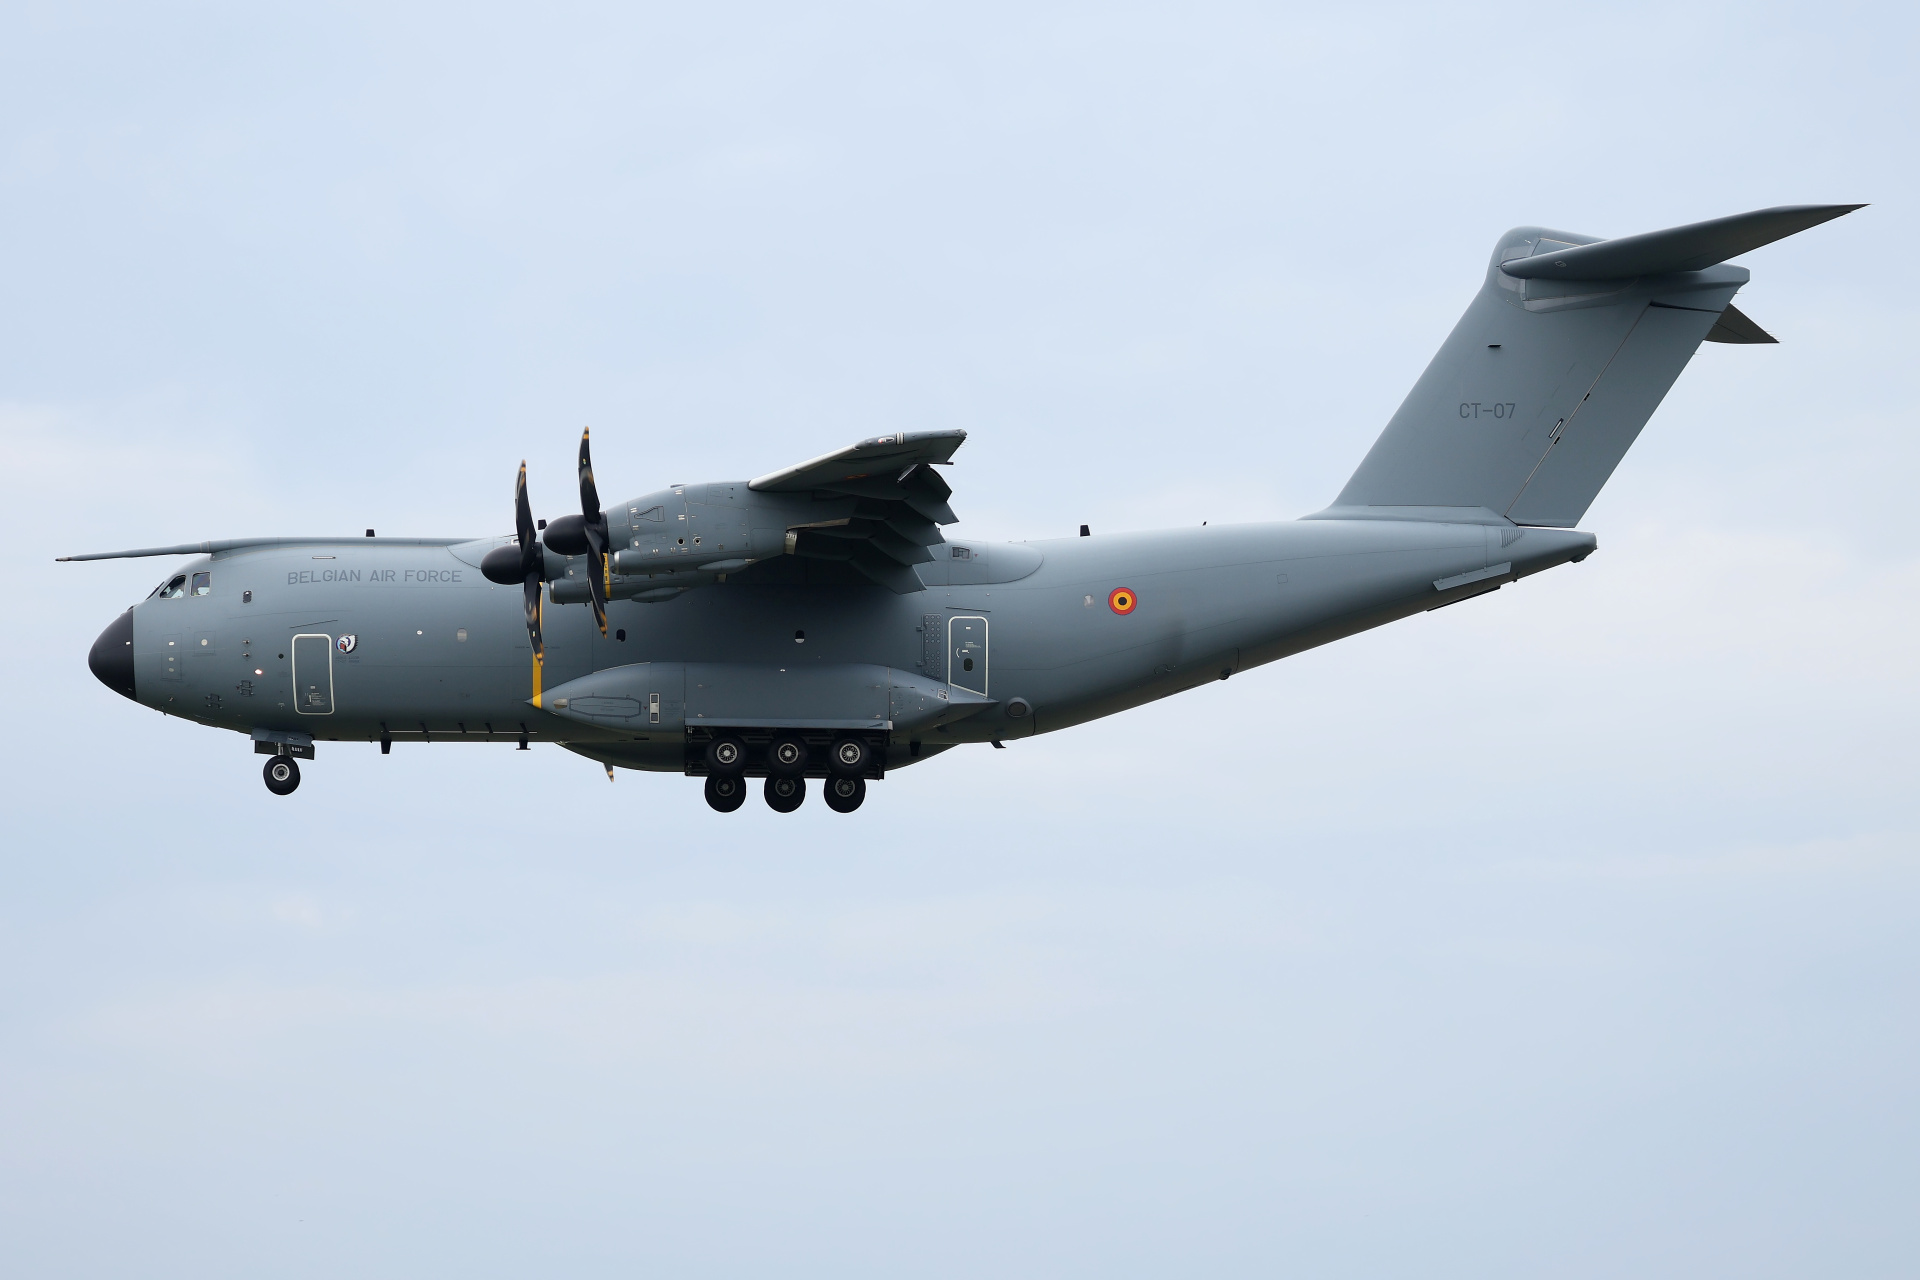 CT-07, Belgian Air Force (Aircraft » Air Show Radom 2023 » Airbus A400M Atlas)